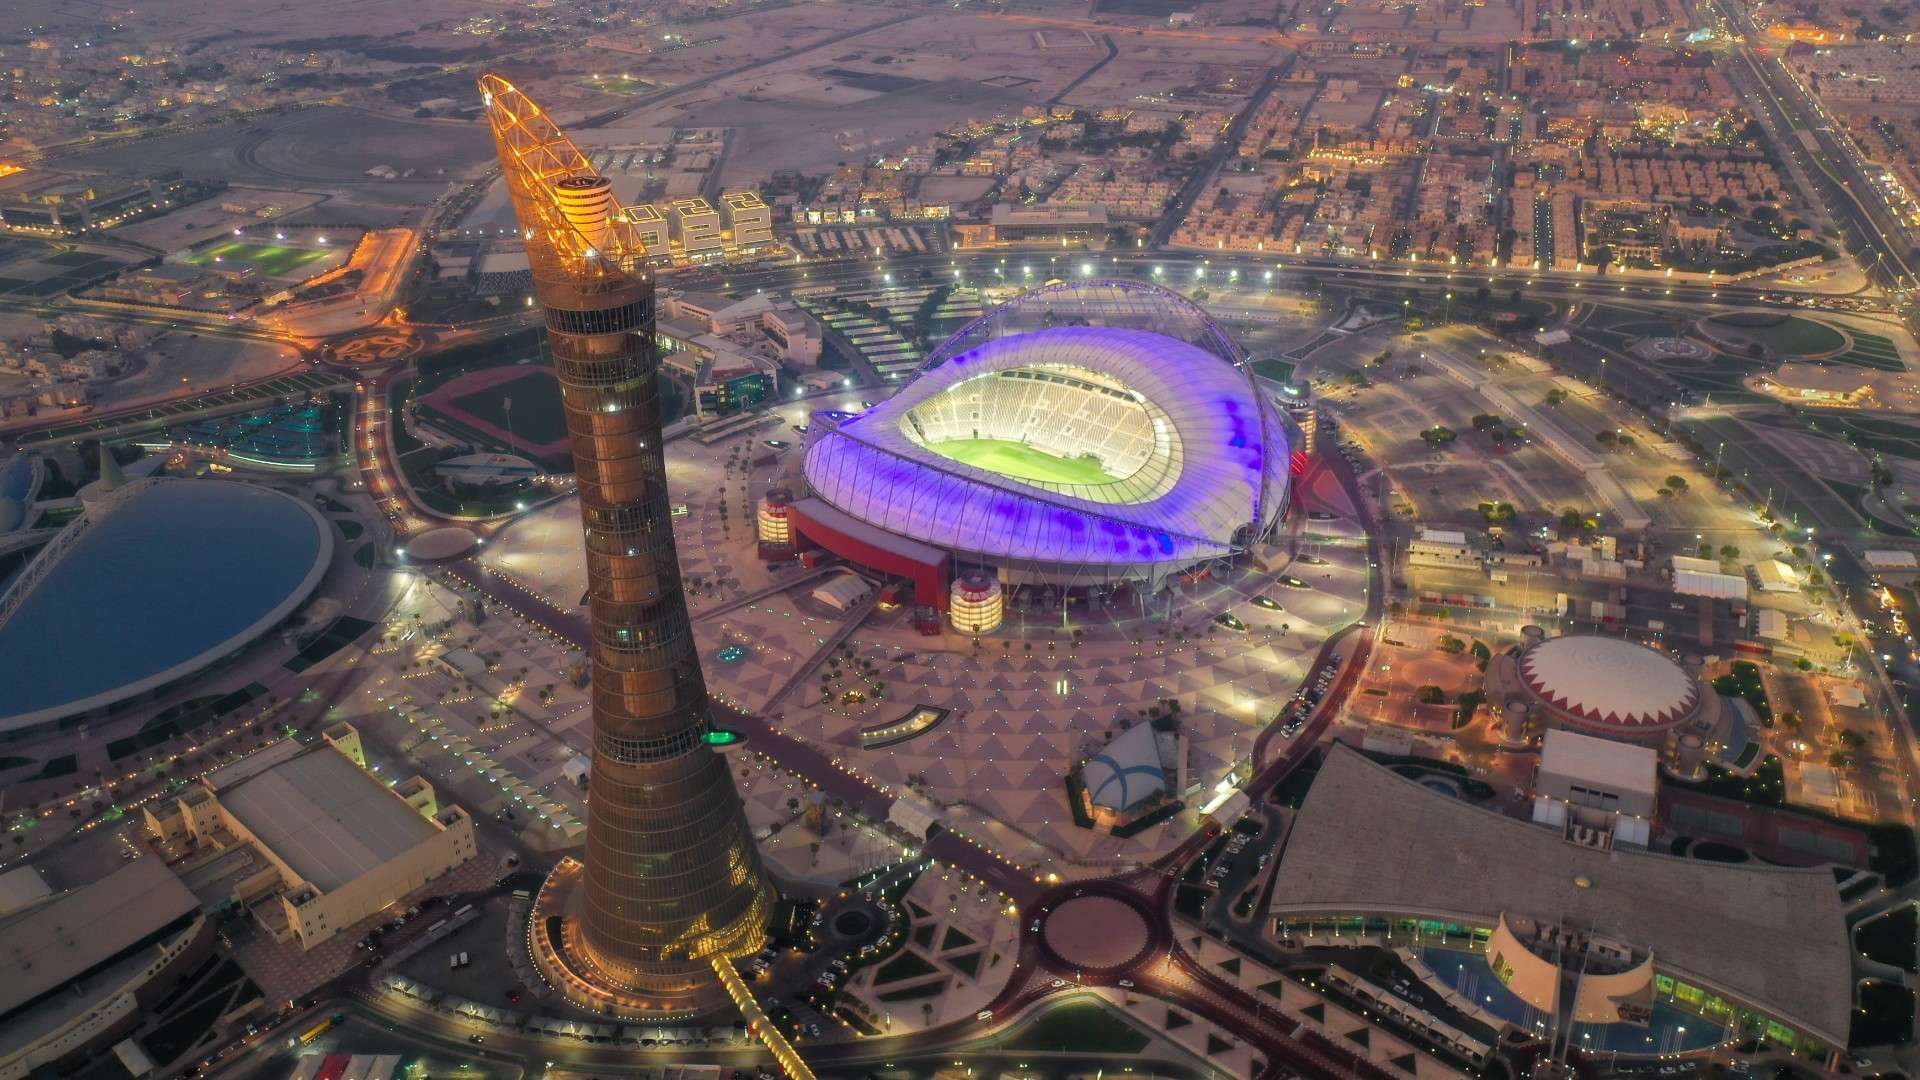 Khalifa Stadium Qatar